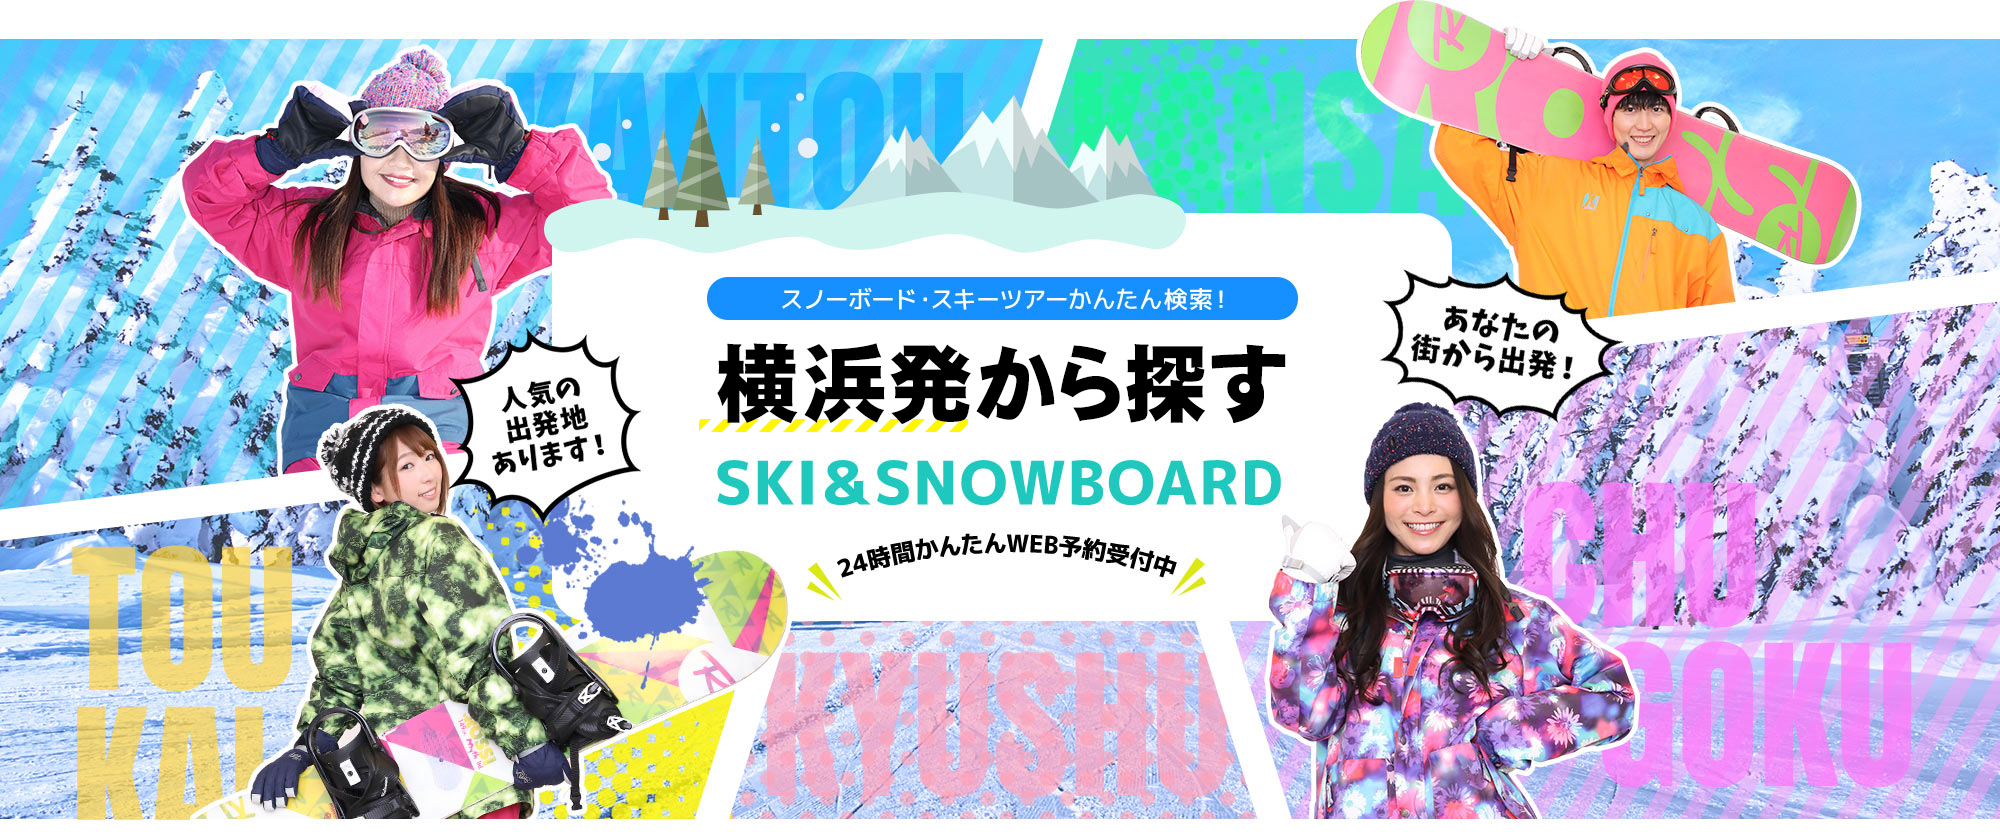 スノーボード・スキーツアーかんたん検索！ 横浜発から探す SKI&SNOWBOARD